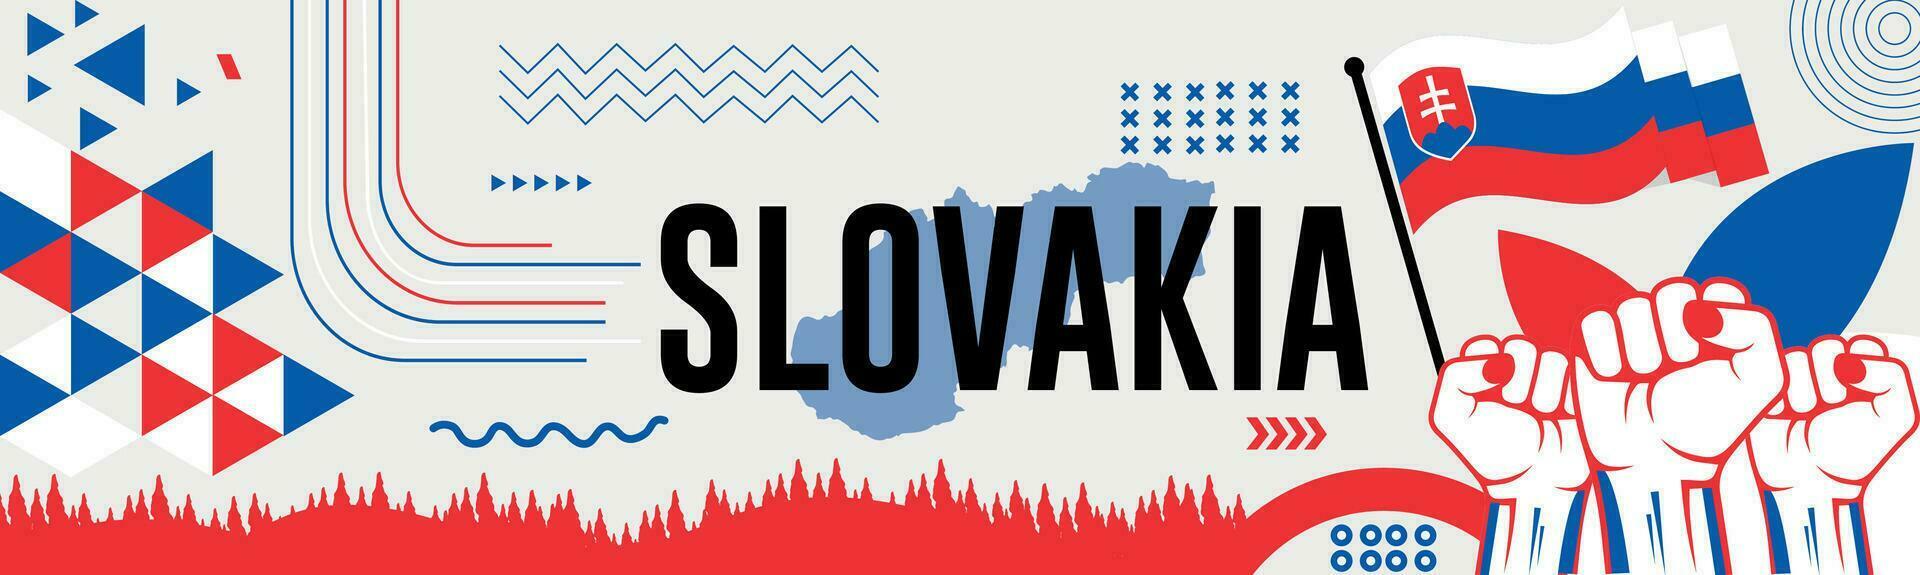 Eslováquia nacional dia bandeira com mapa, bandeira cores tema fundo e geométrico abstrato retro moderno colorido Projeto com elevado mãos ou punhos. vetor